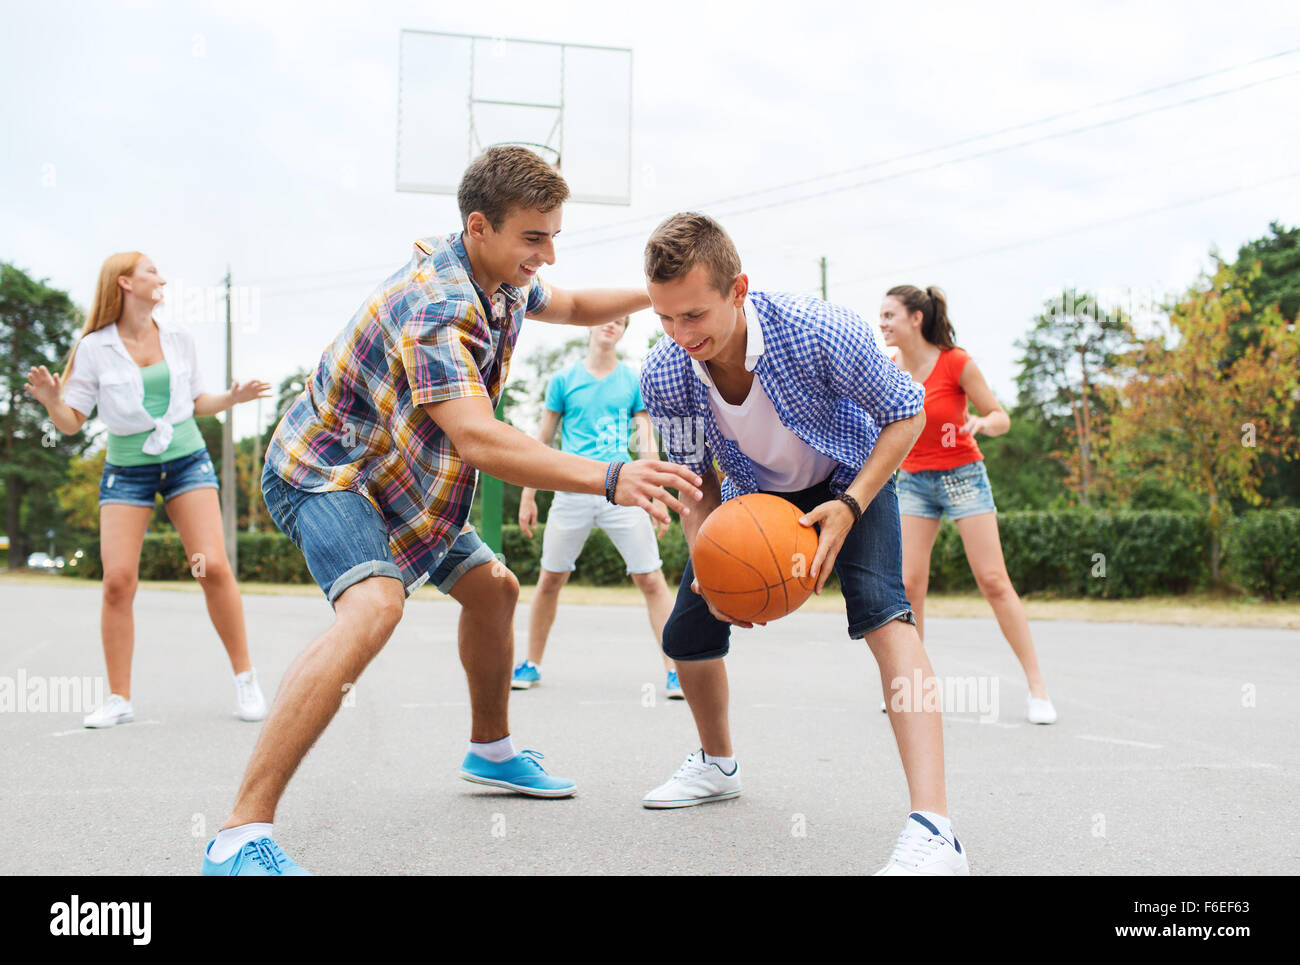 Young people and sport. Подростки играют в мяч. Подросток играющий в мячик. Молодежь с мячом. Спортивные игры с друзьями.